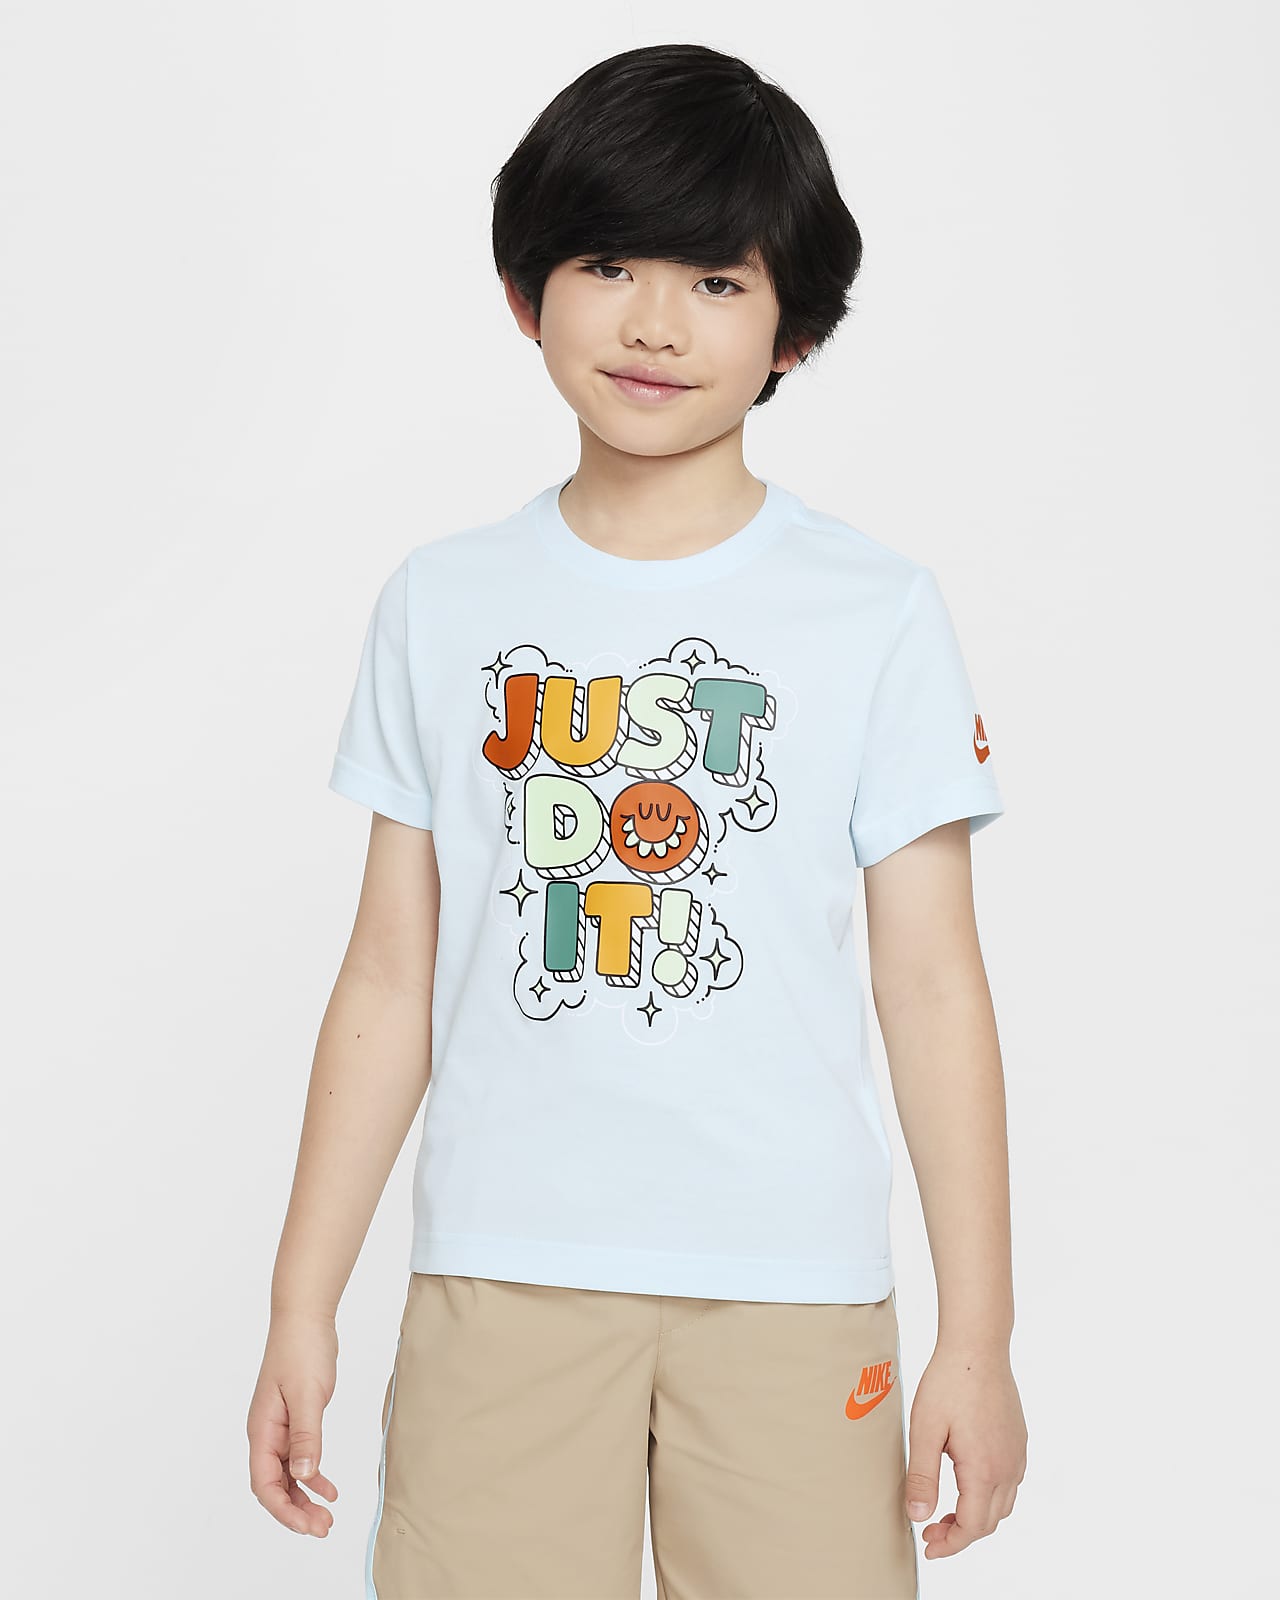 T-shirt dla małych dzieci w bąbelkowym stylu „Just Do It” Nike